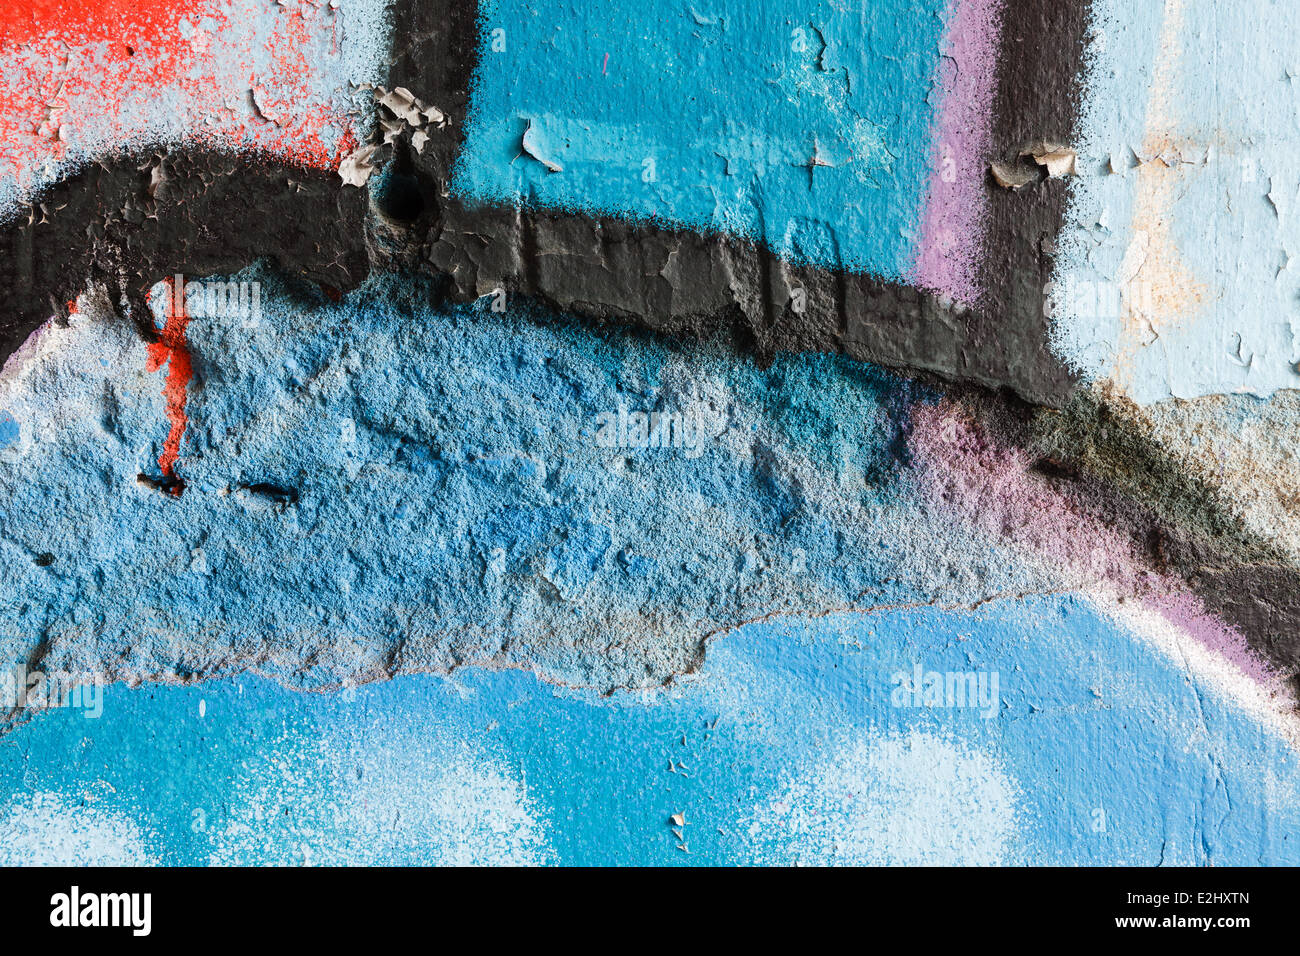 Closeup of a damaged graffiti wall Stock Photo